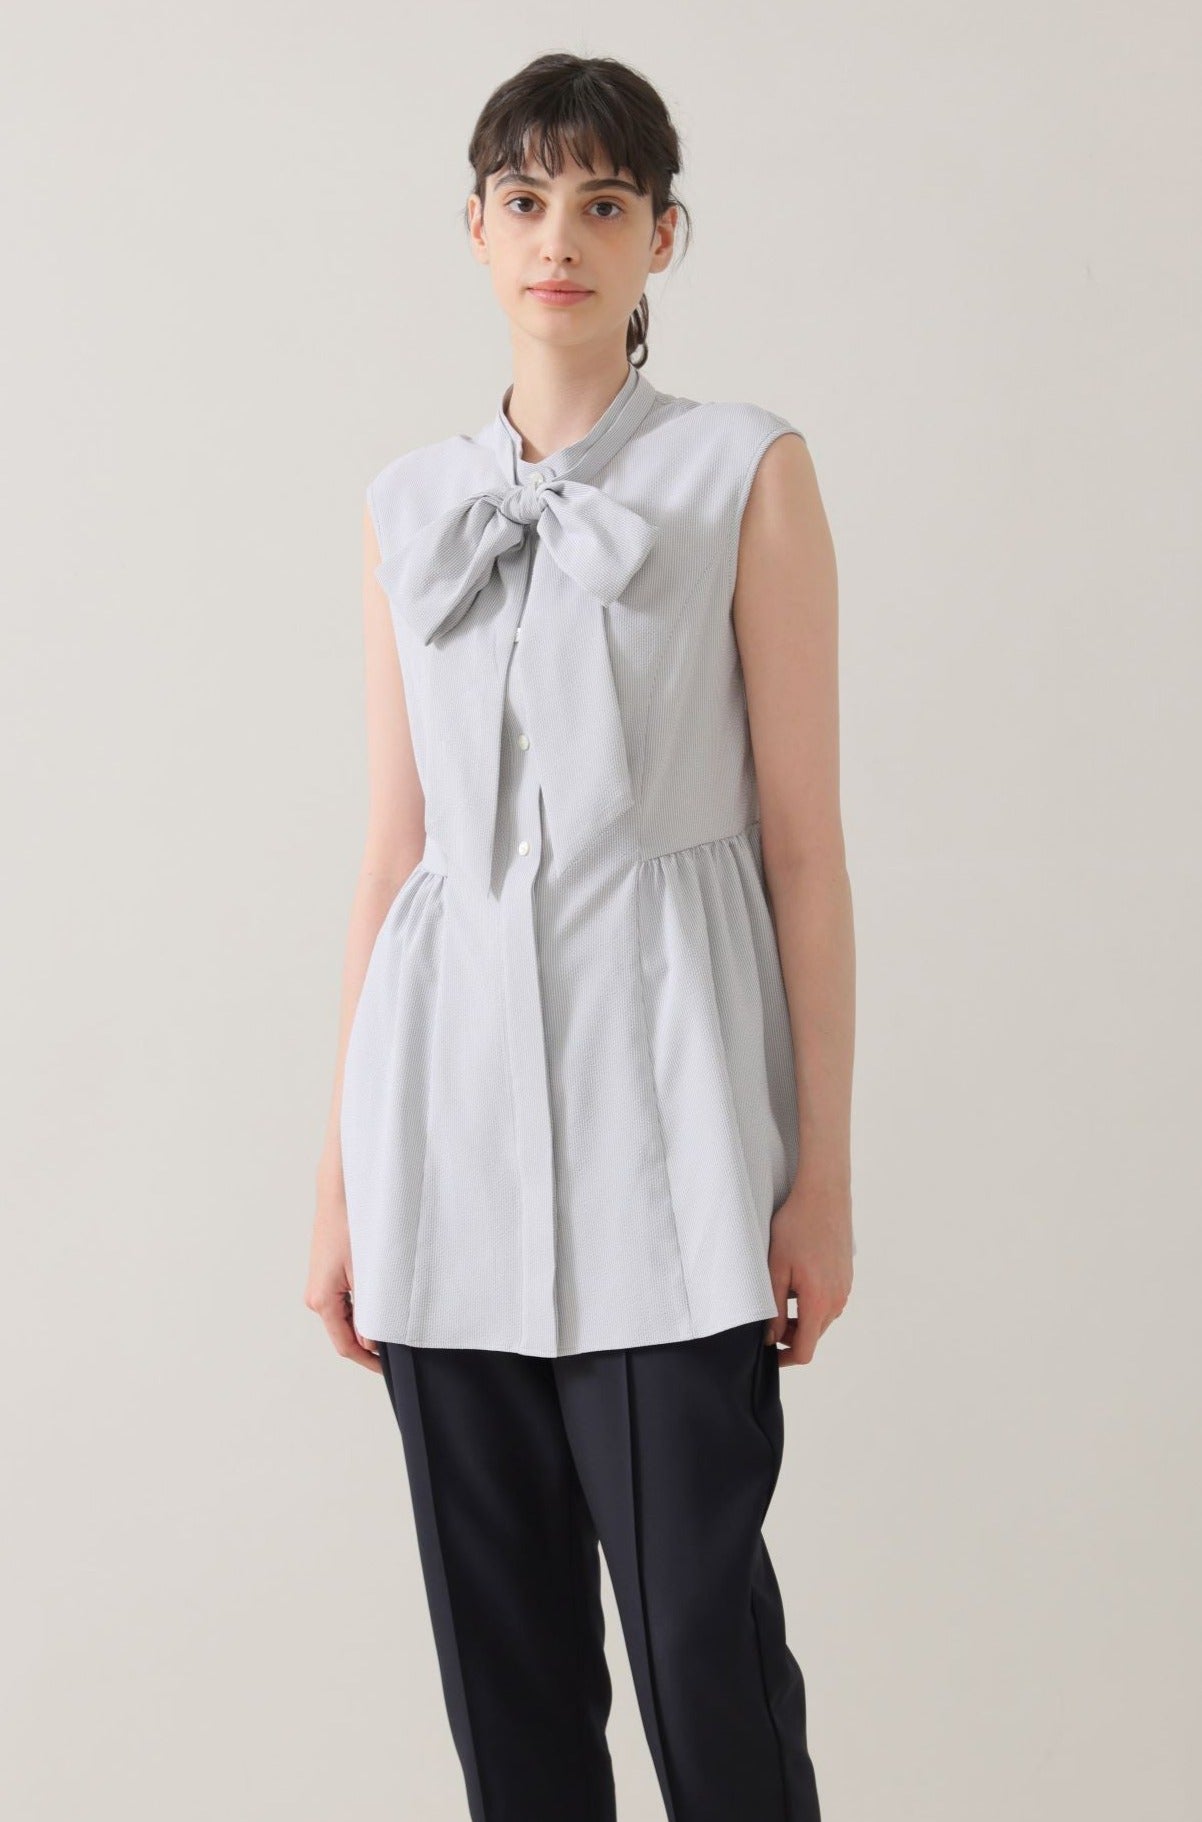 Urban lady blouse (Gray stripe) – Audire